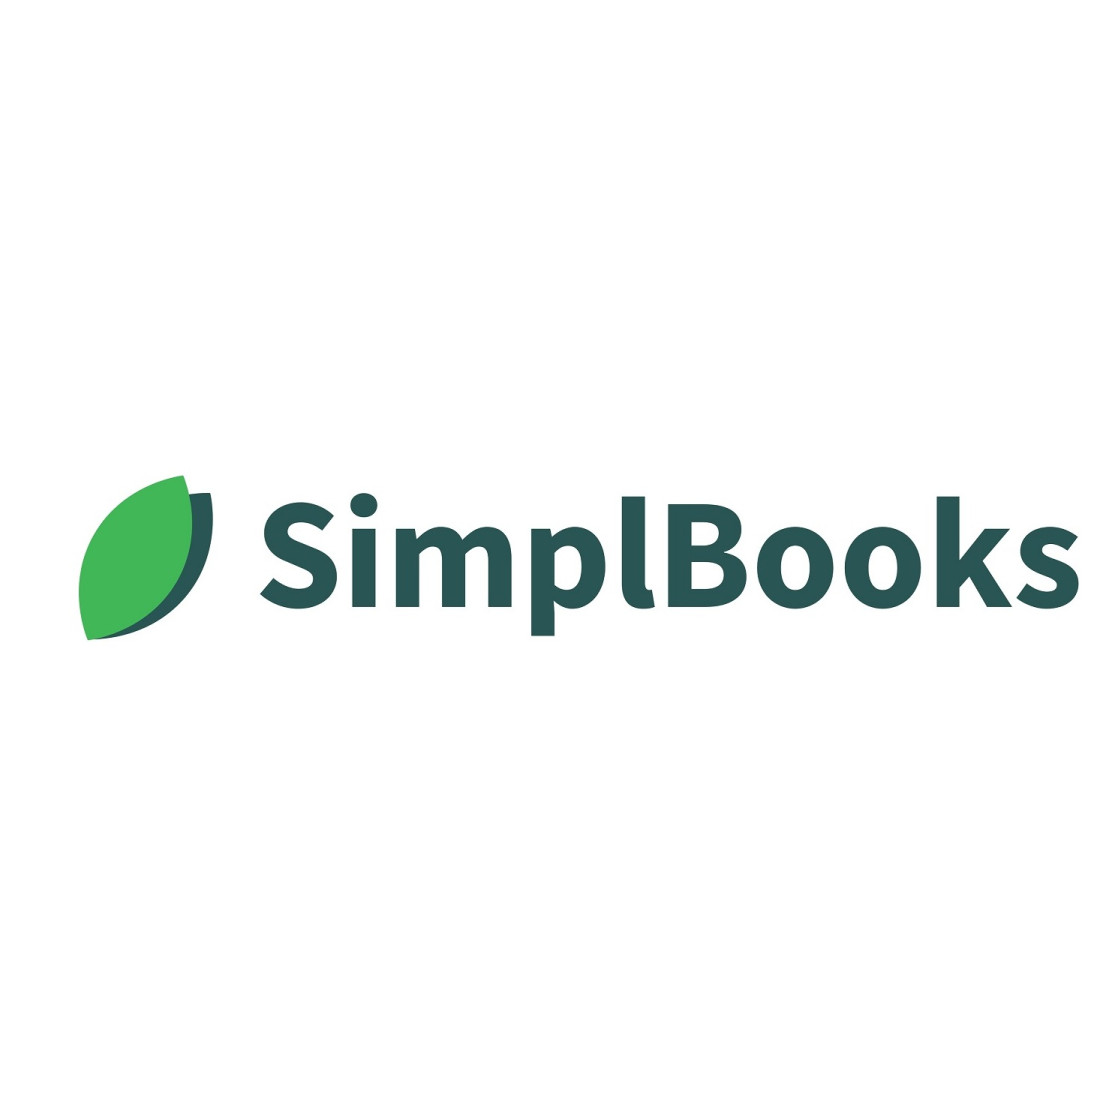 SIMPLBOOKS OÜ - SimplBooks raamatupidamistarkvara on lihtne, aga võimekas!